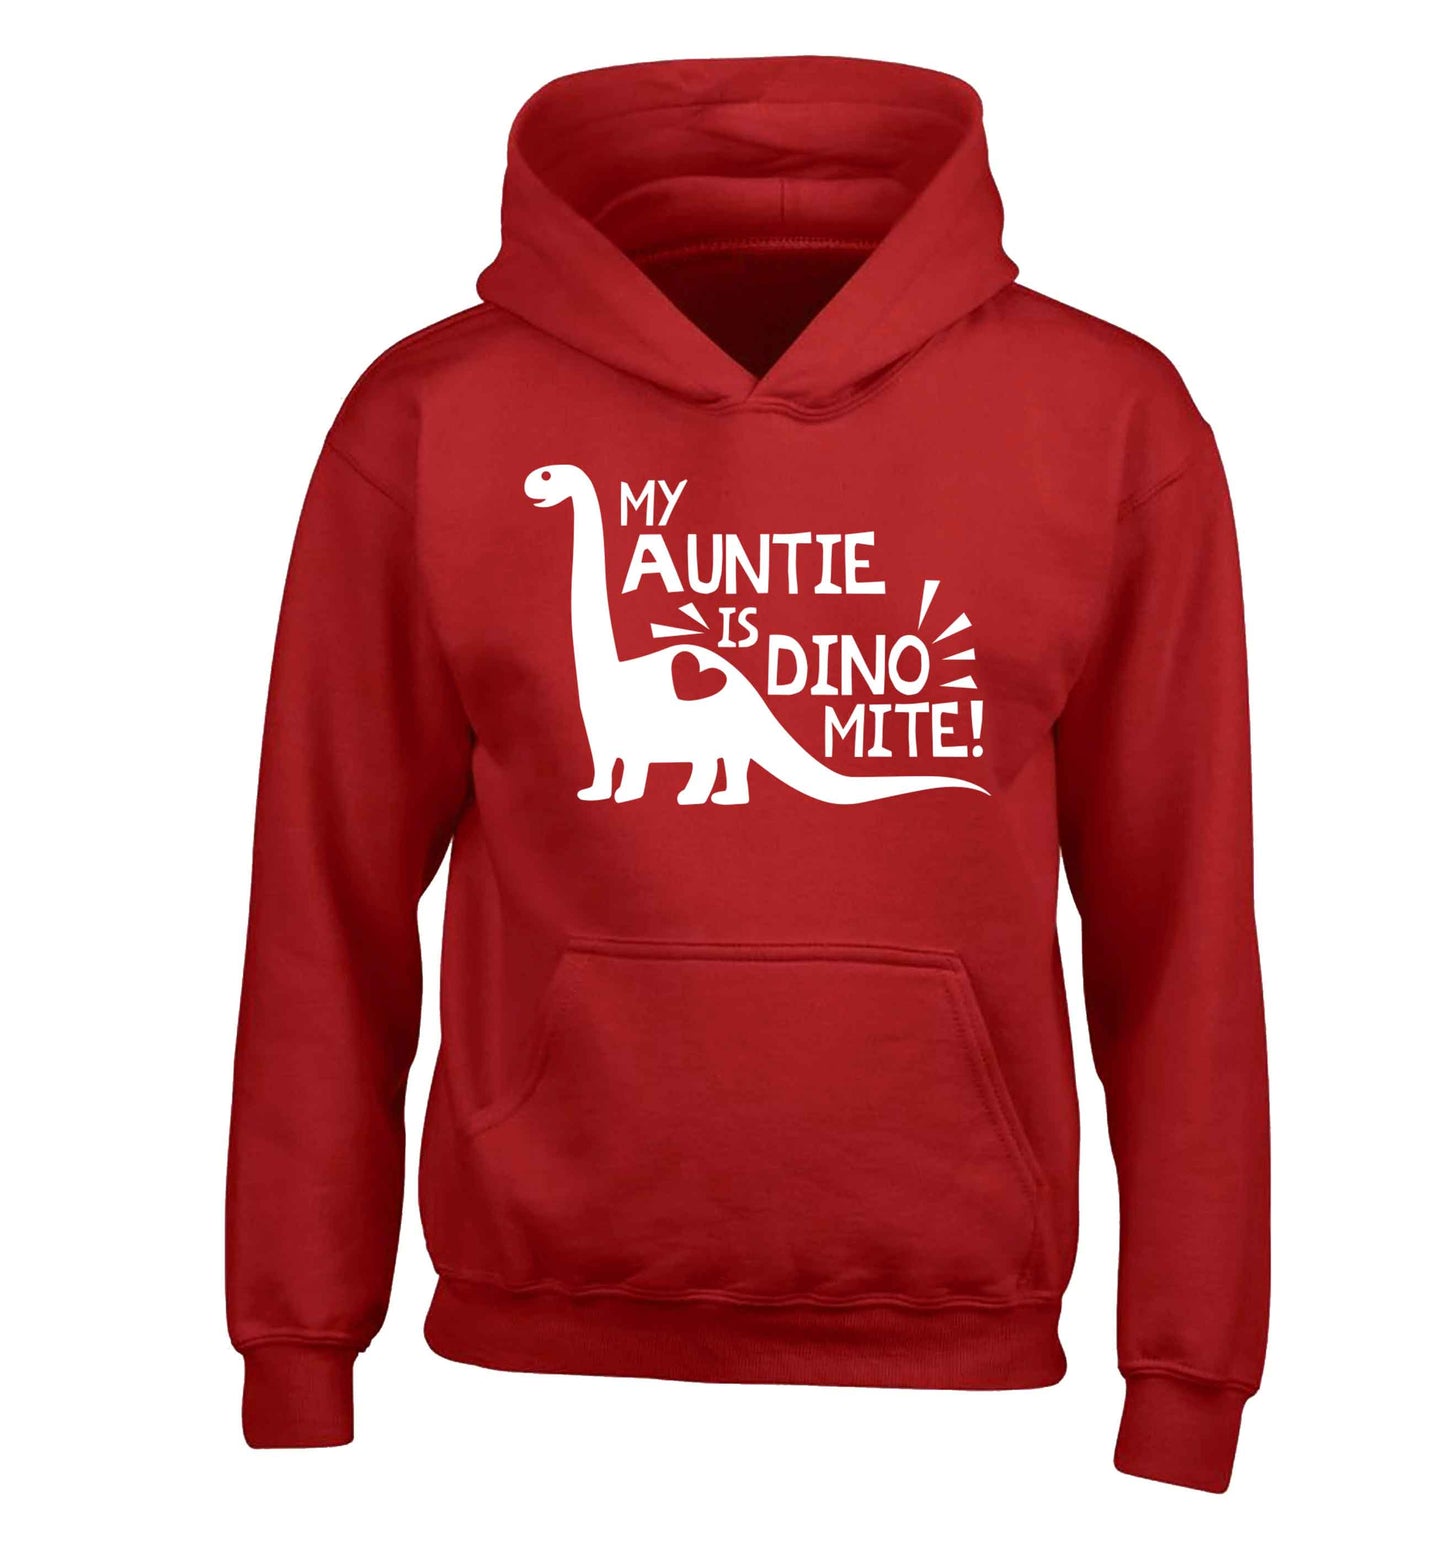 My auntie is dinomite! children's red hoodie 12-13 Years